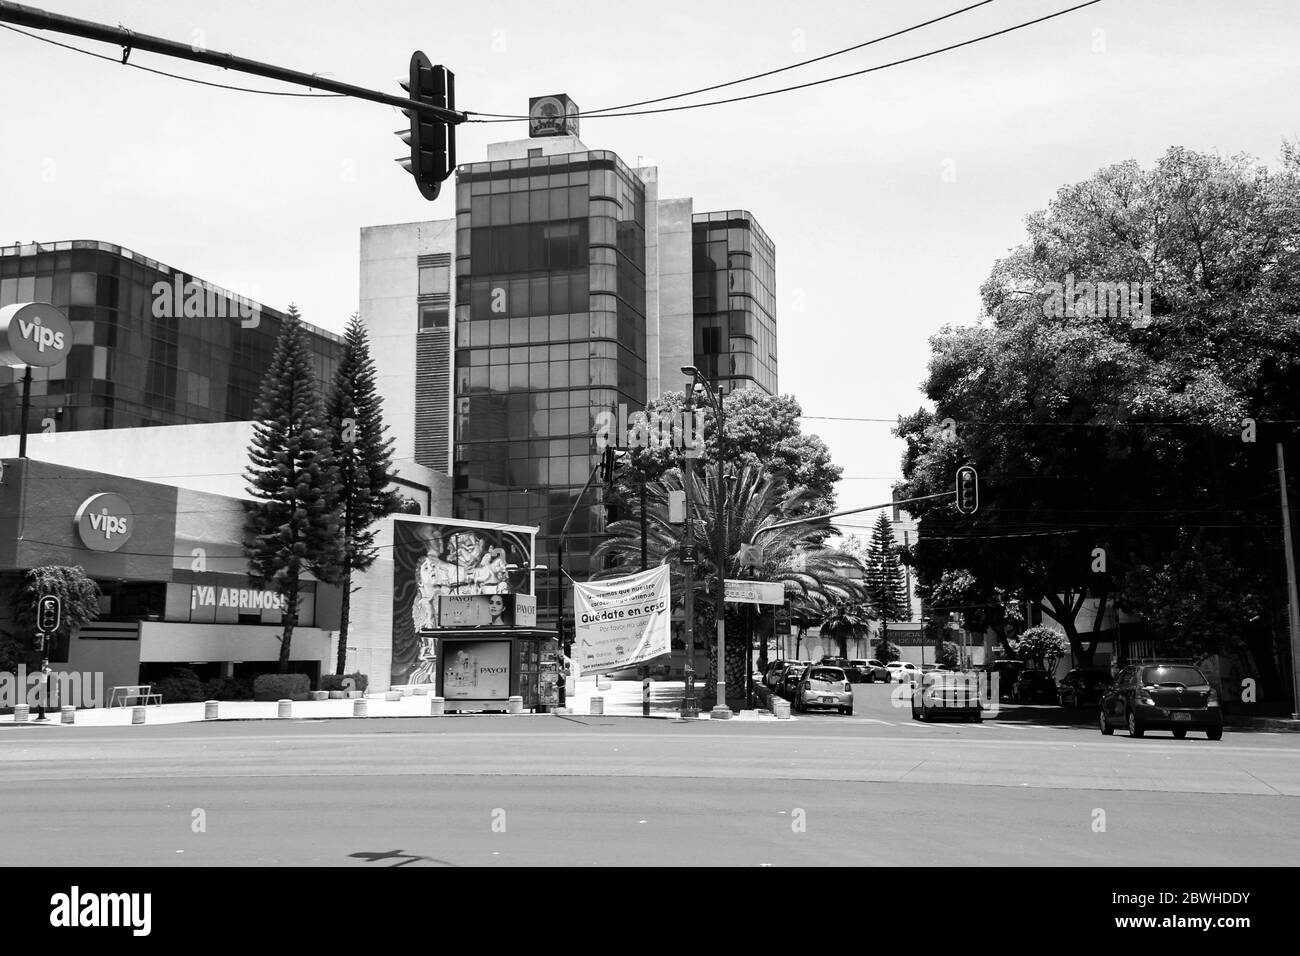 StreetView près de la station de métro 'Plaza de la Revolución', sur l'avenue vide Insurgentes pendant la pandémie covid-19 avec le grand signe 'home' Banque D'Images